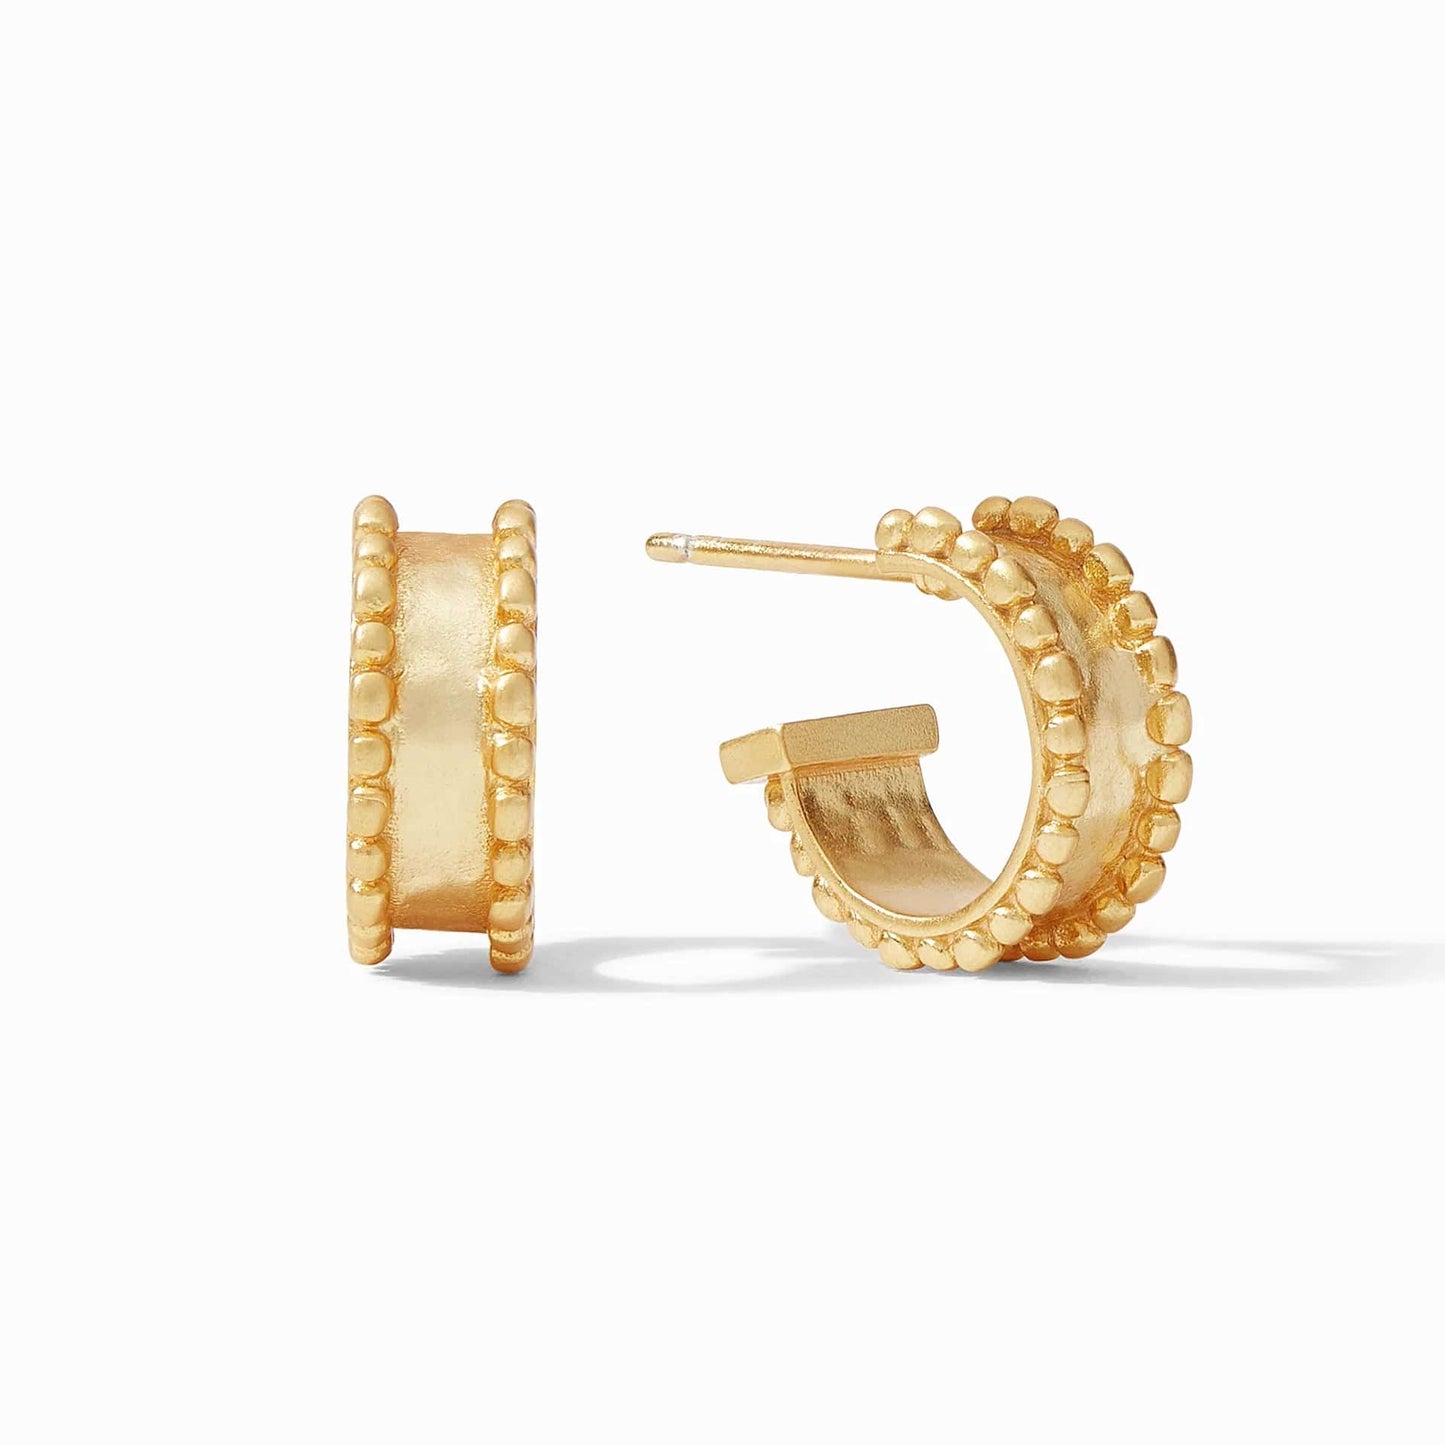 Julie Vos - Marbella Pearl Hoop & Charm Earring - Findlay Rowe Designs